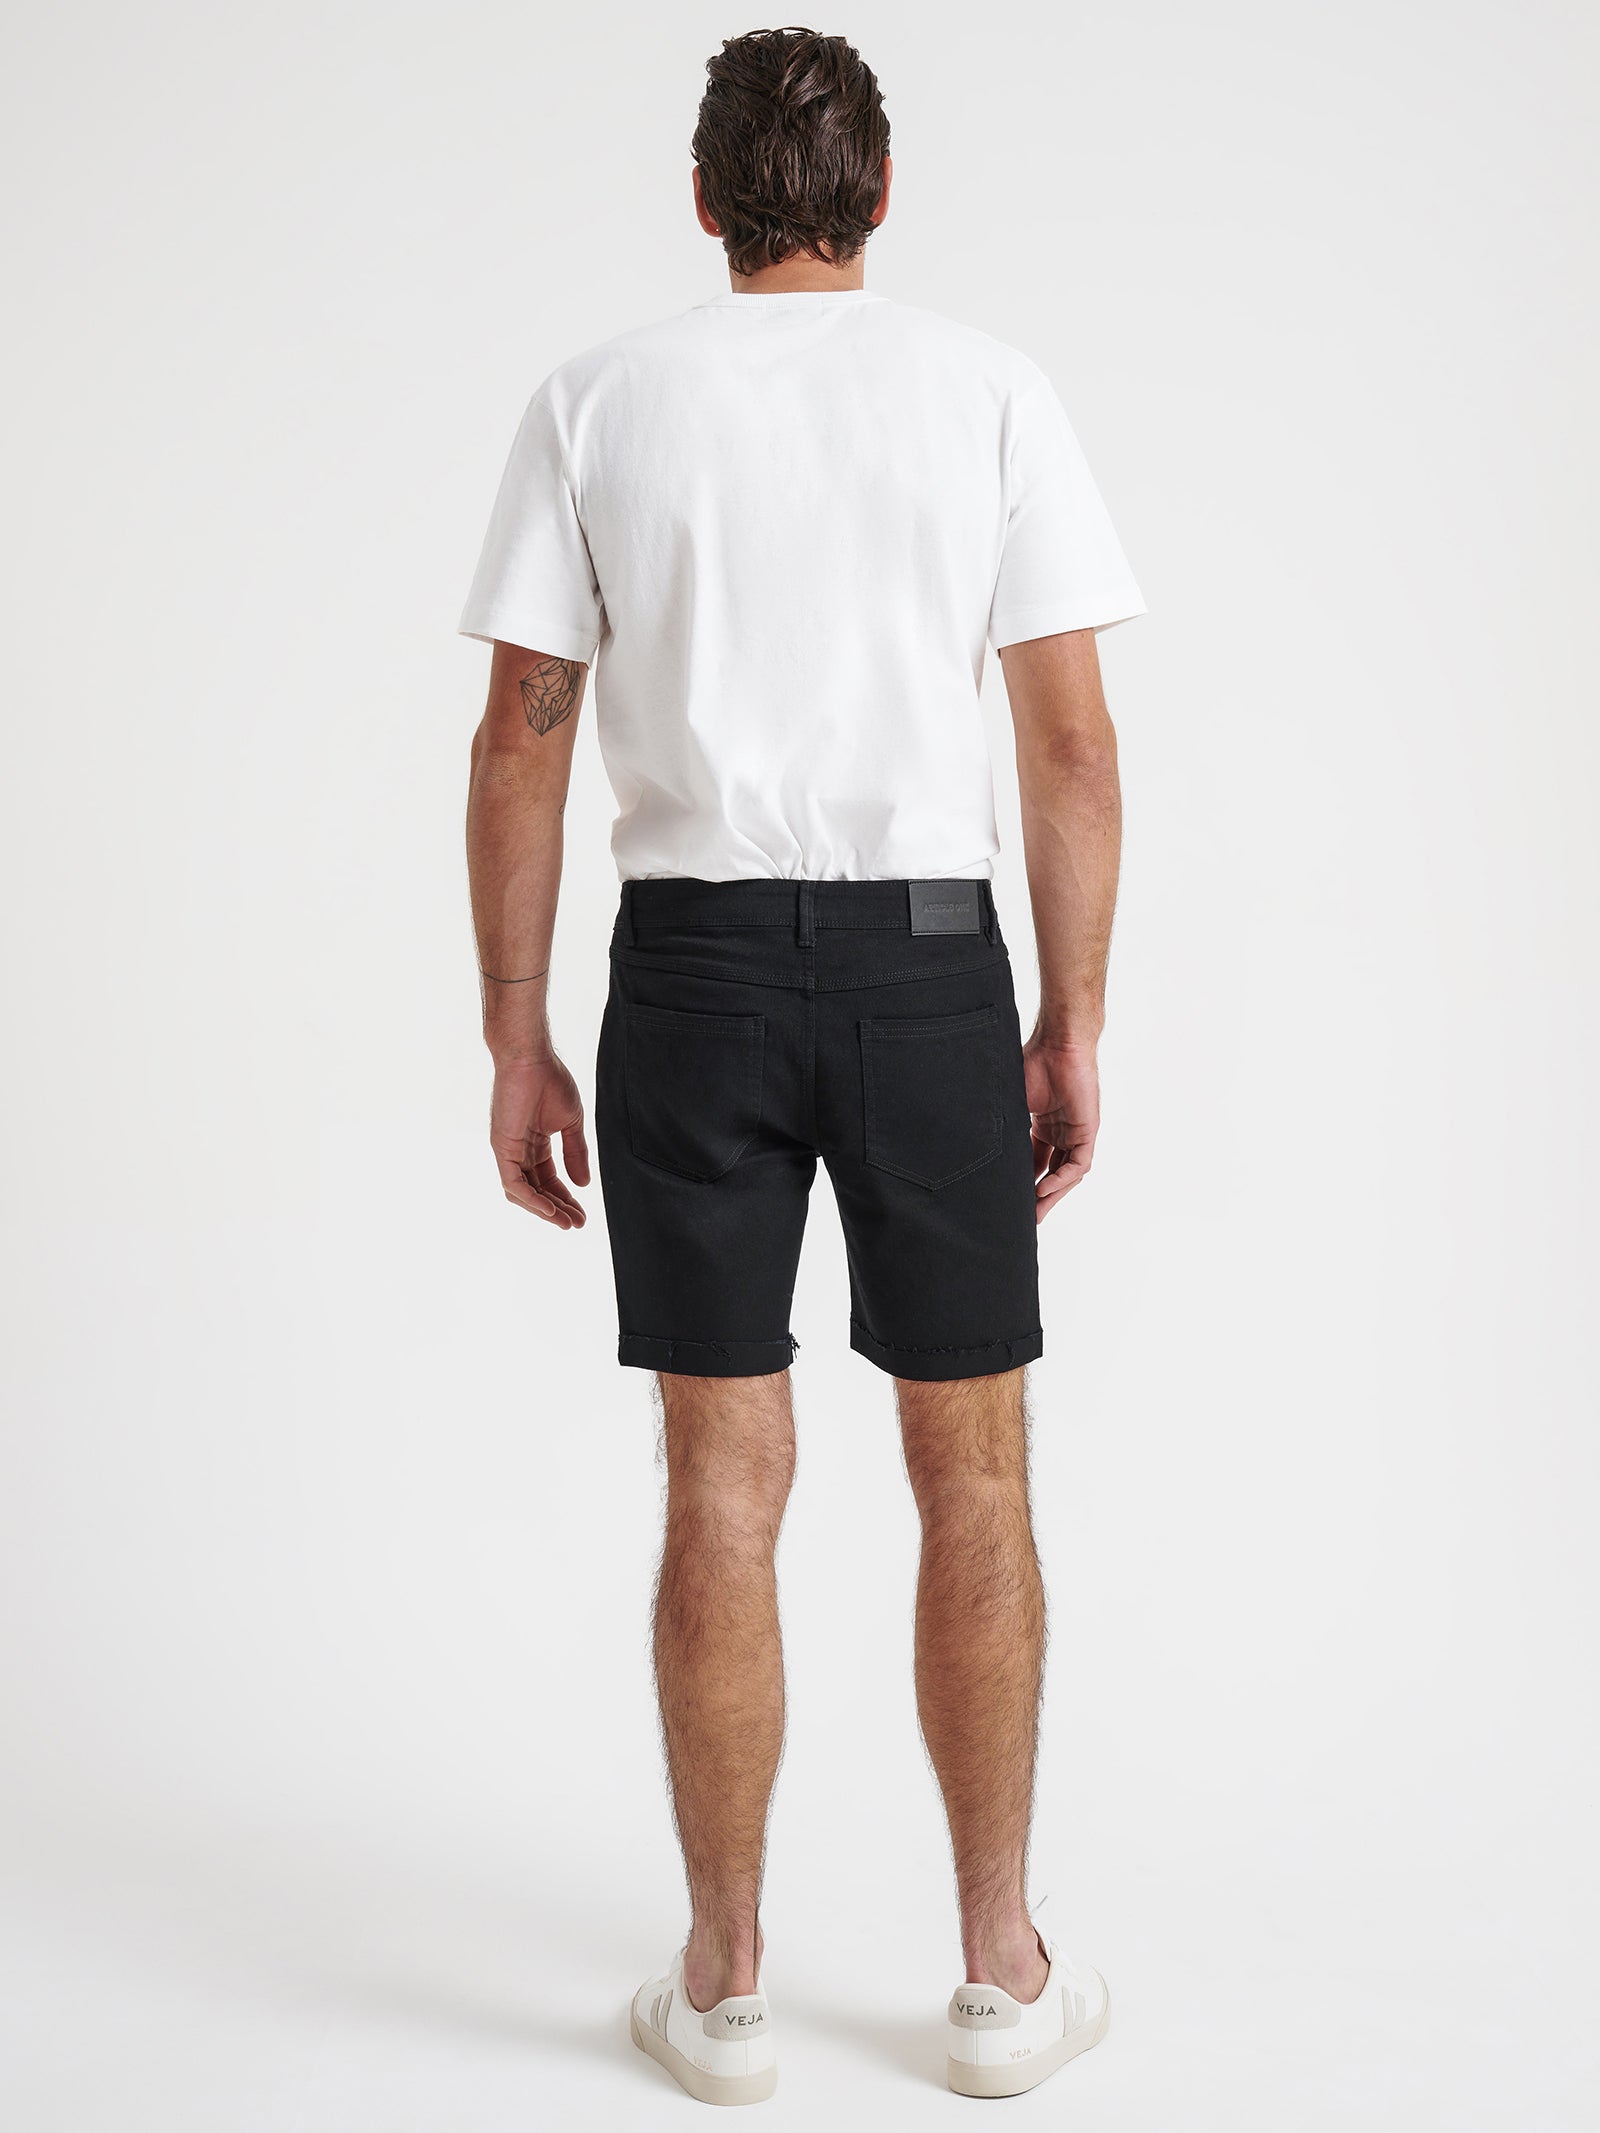 Zane Skinny Denim Shorts in True Black Rip